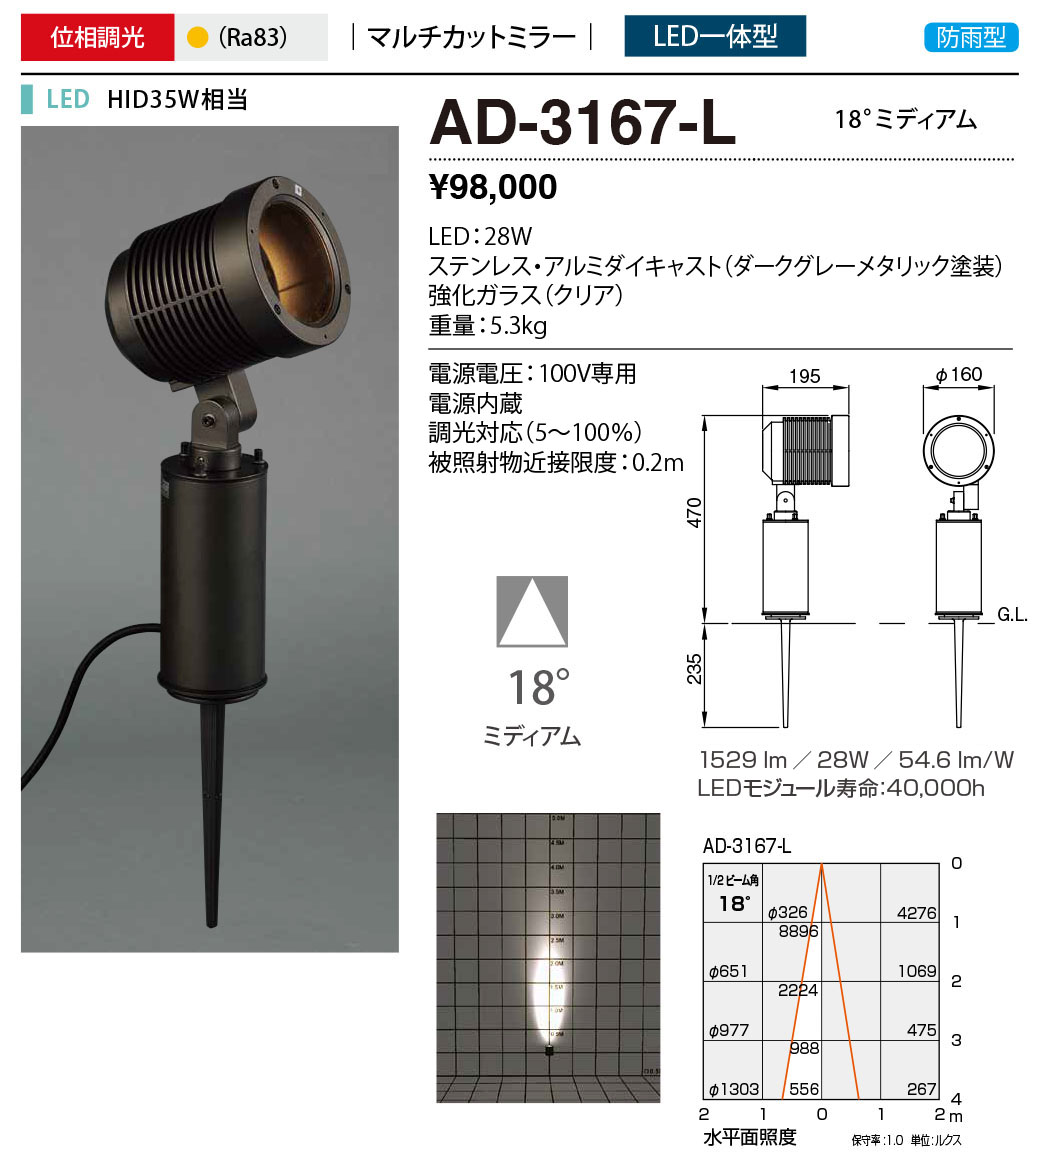 お中元 山田照明 AD-3167-L スパイクライト 一台の価格です